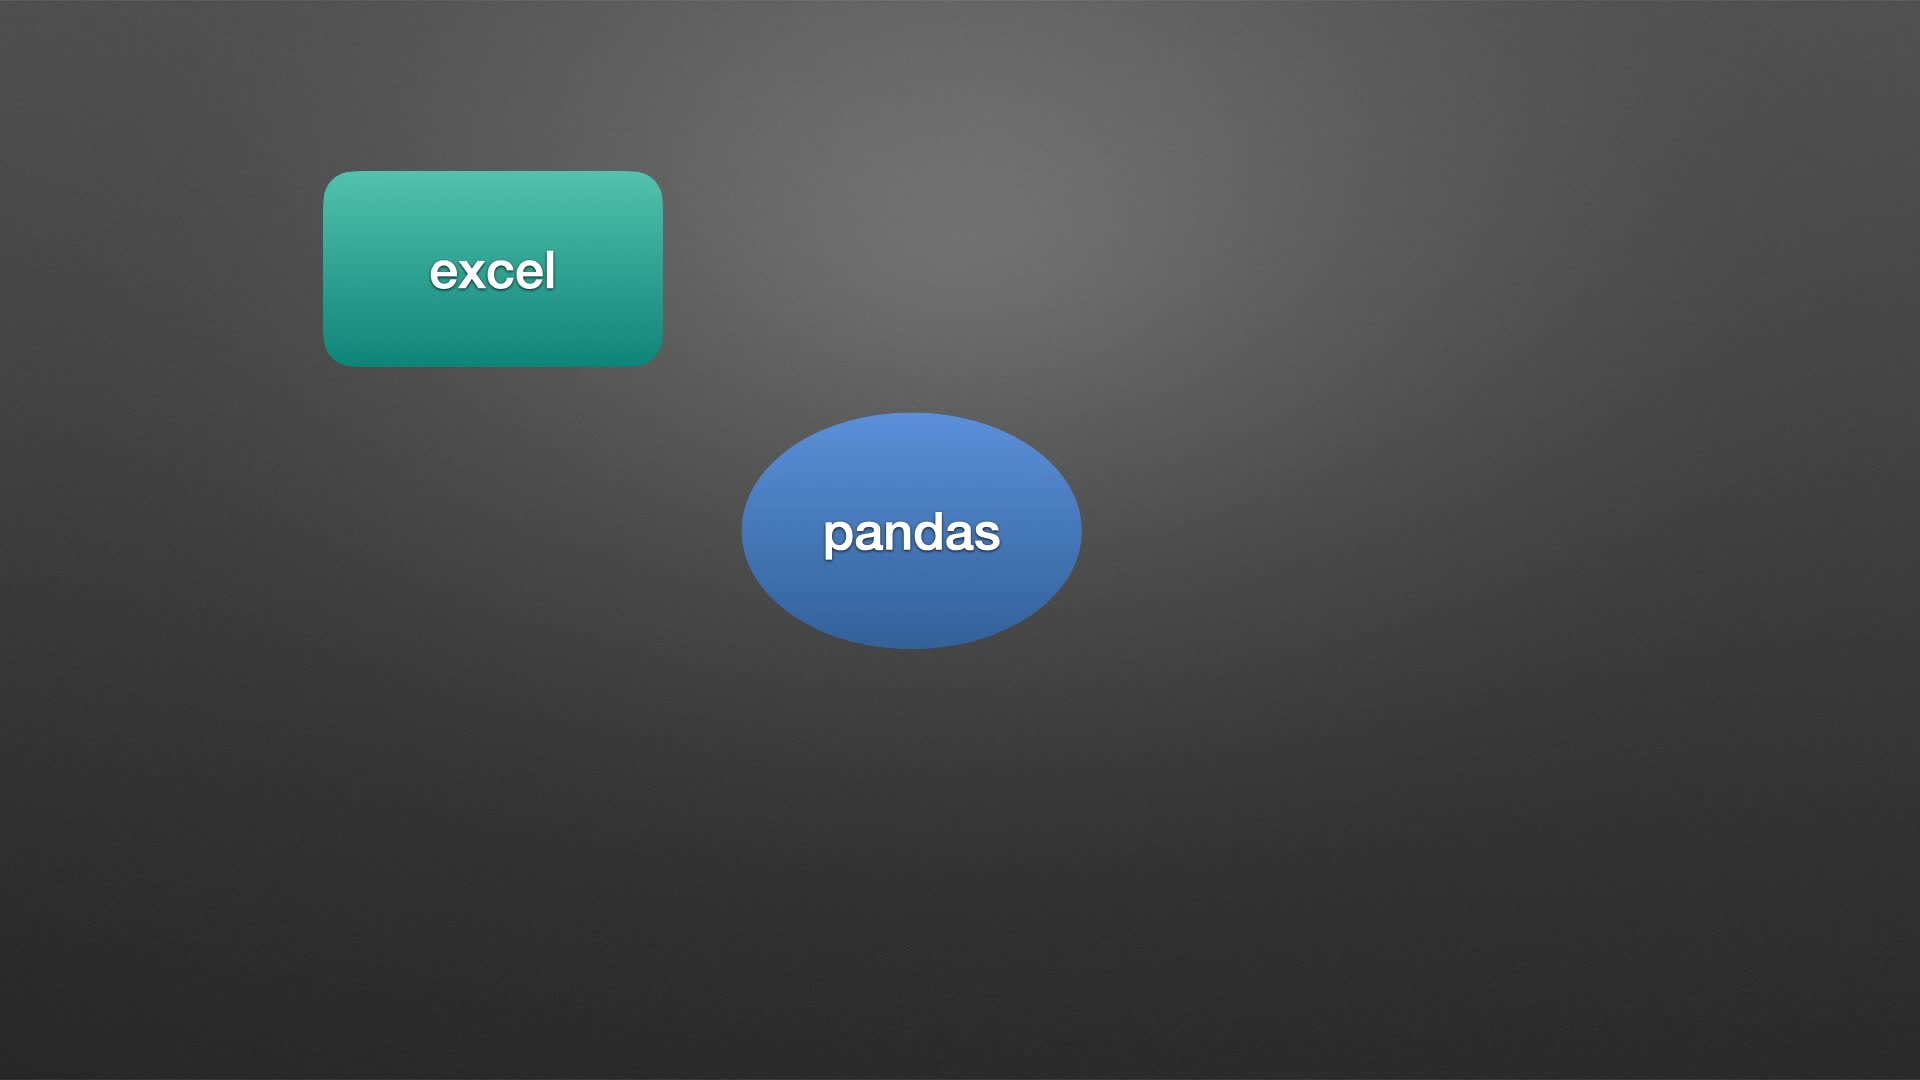 2020年 Pandas 数据分析 & Excel 办公自动化